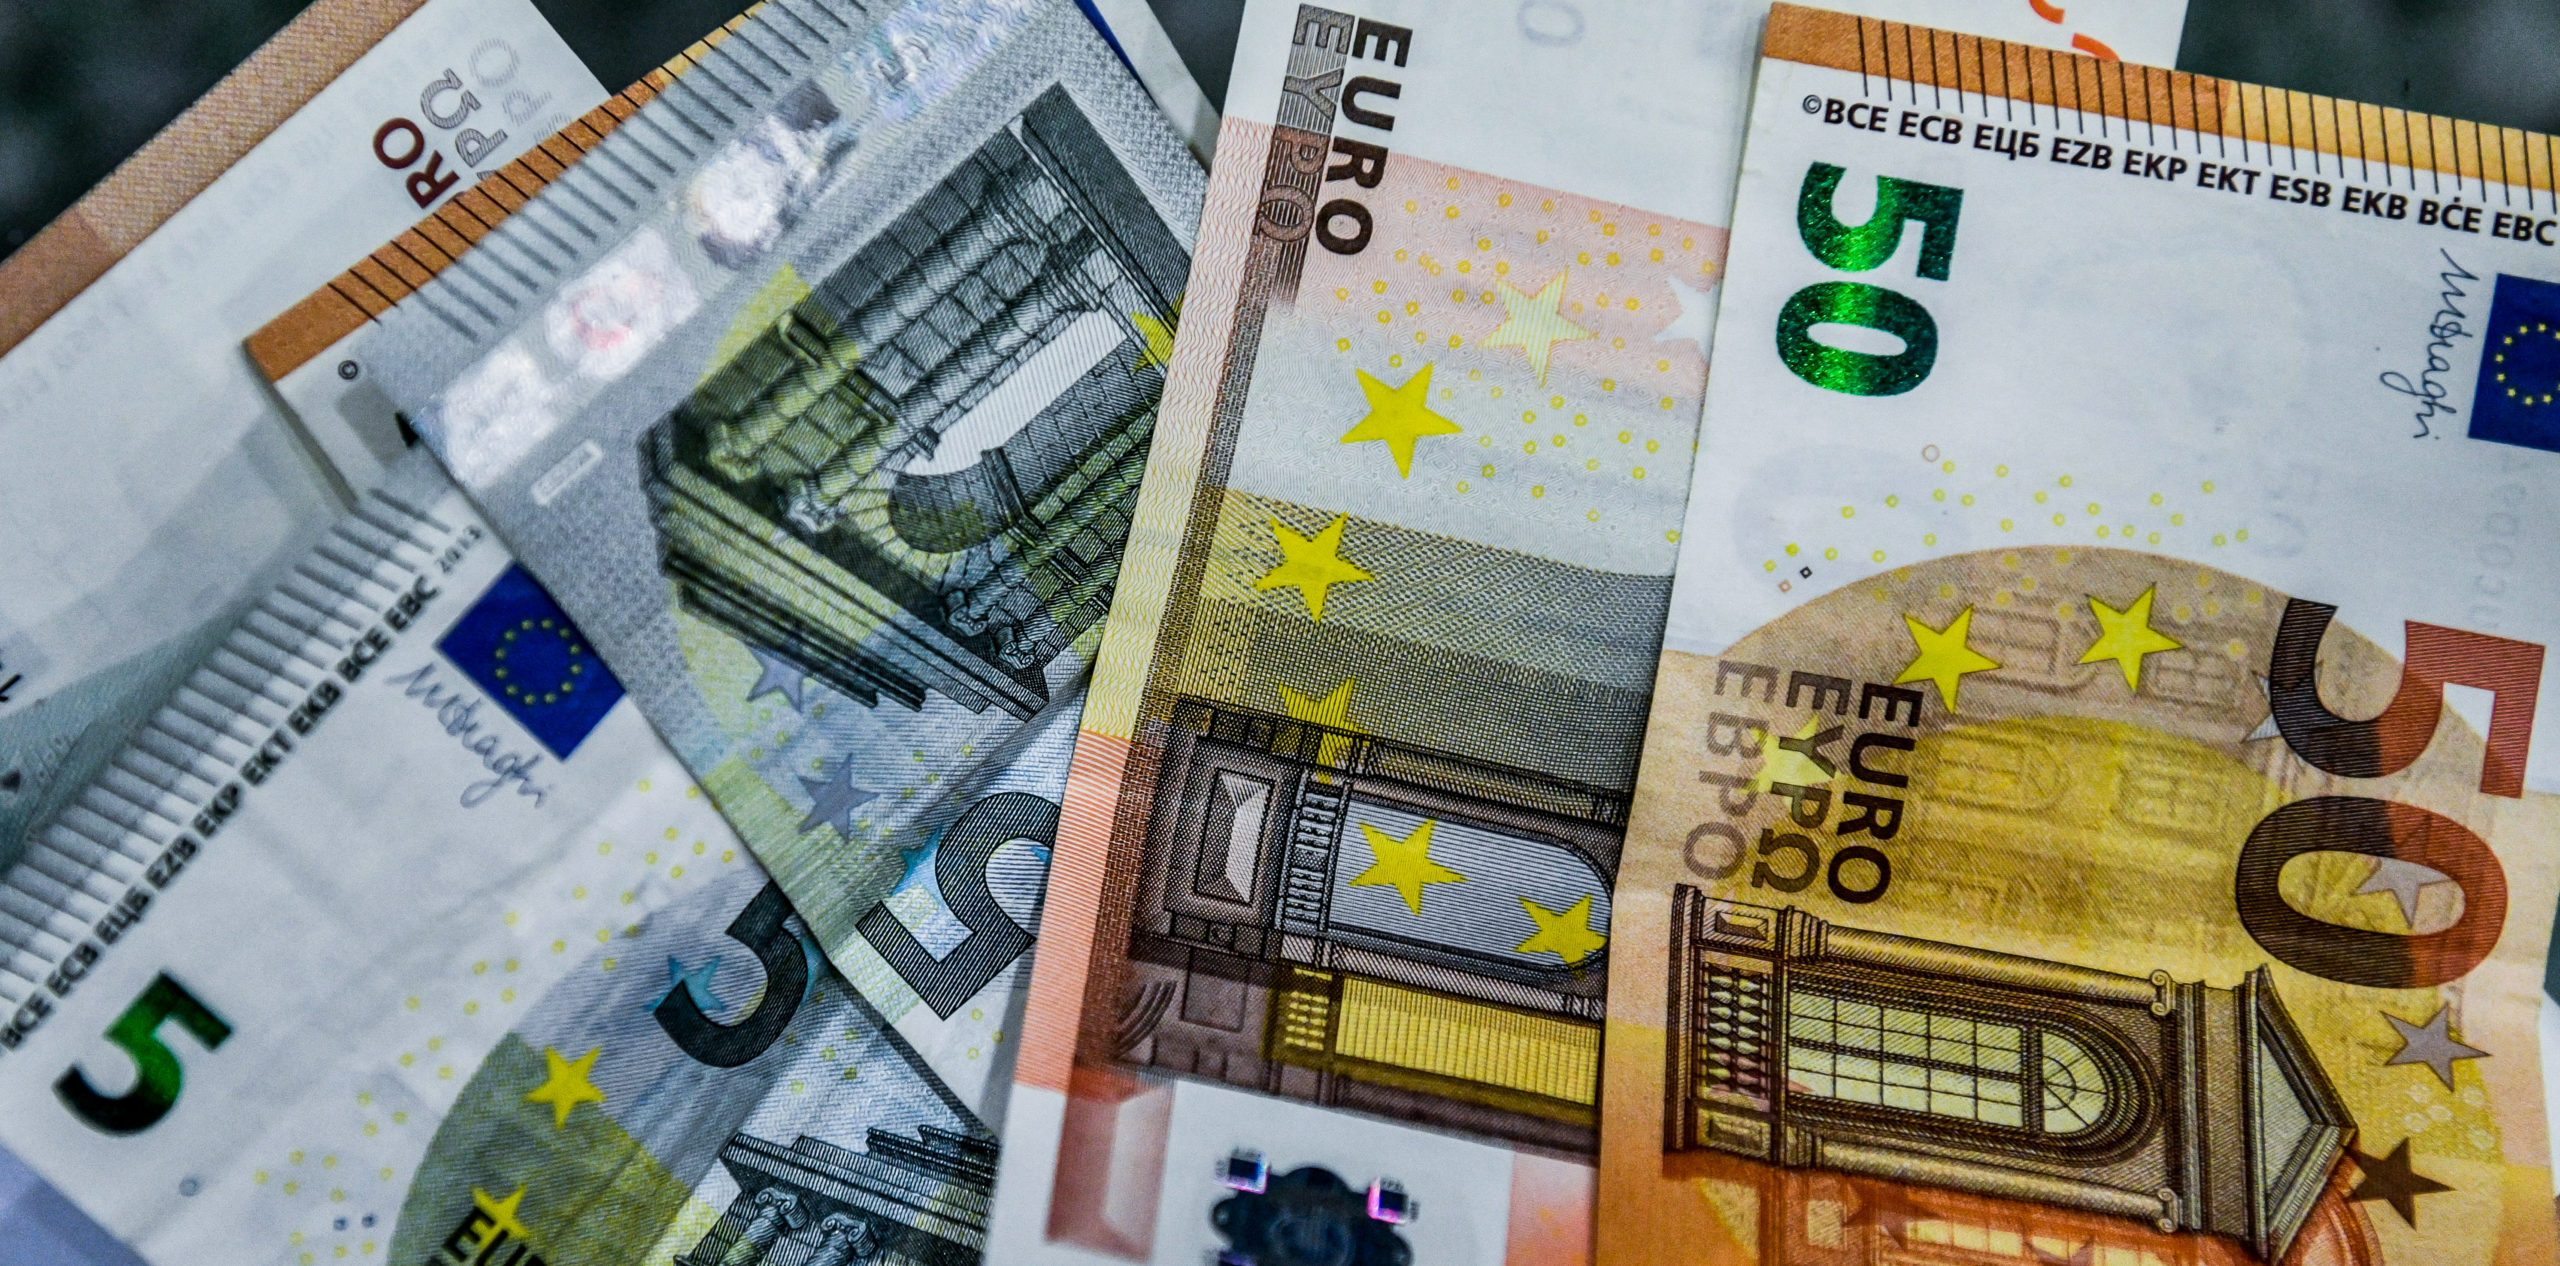 Επιτήδειοι εξαπάτησαν ηλικιωμένες: Υποδήθηκαν υπαλλήλους της ΔΕΗ και «άρπαξαν» 150.000 ευρώ